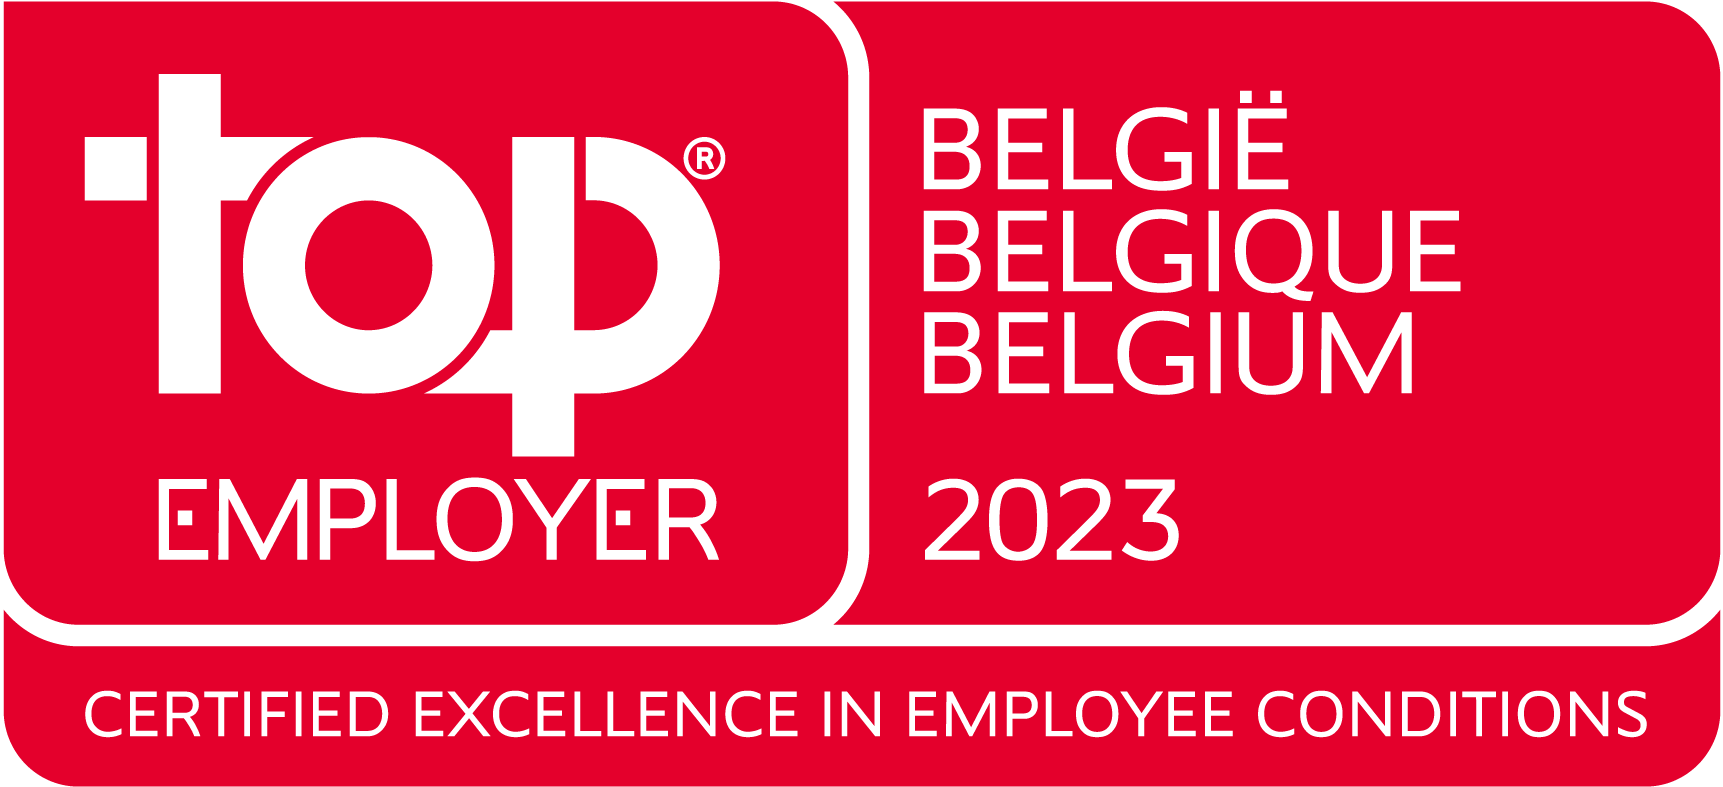 Top Employer Belgium 2023 Top Employer Belgium 2023